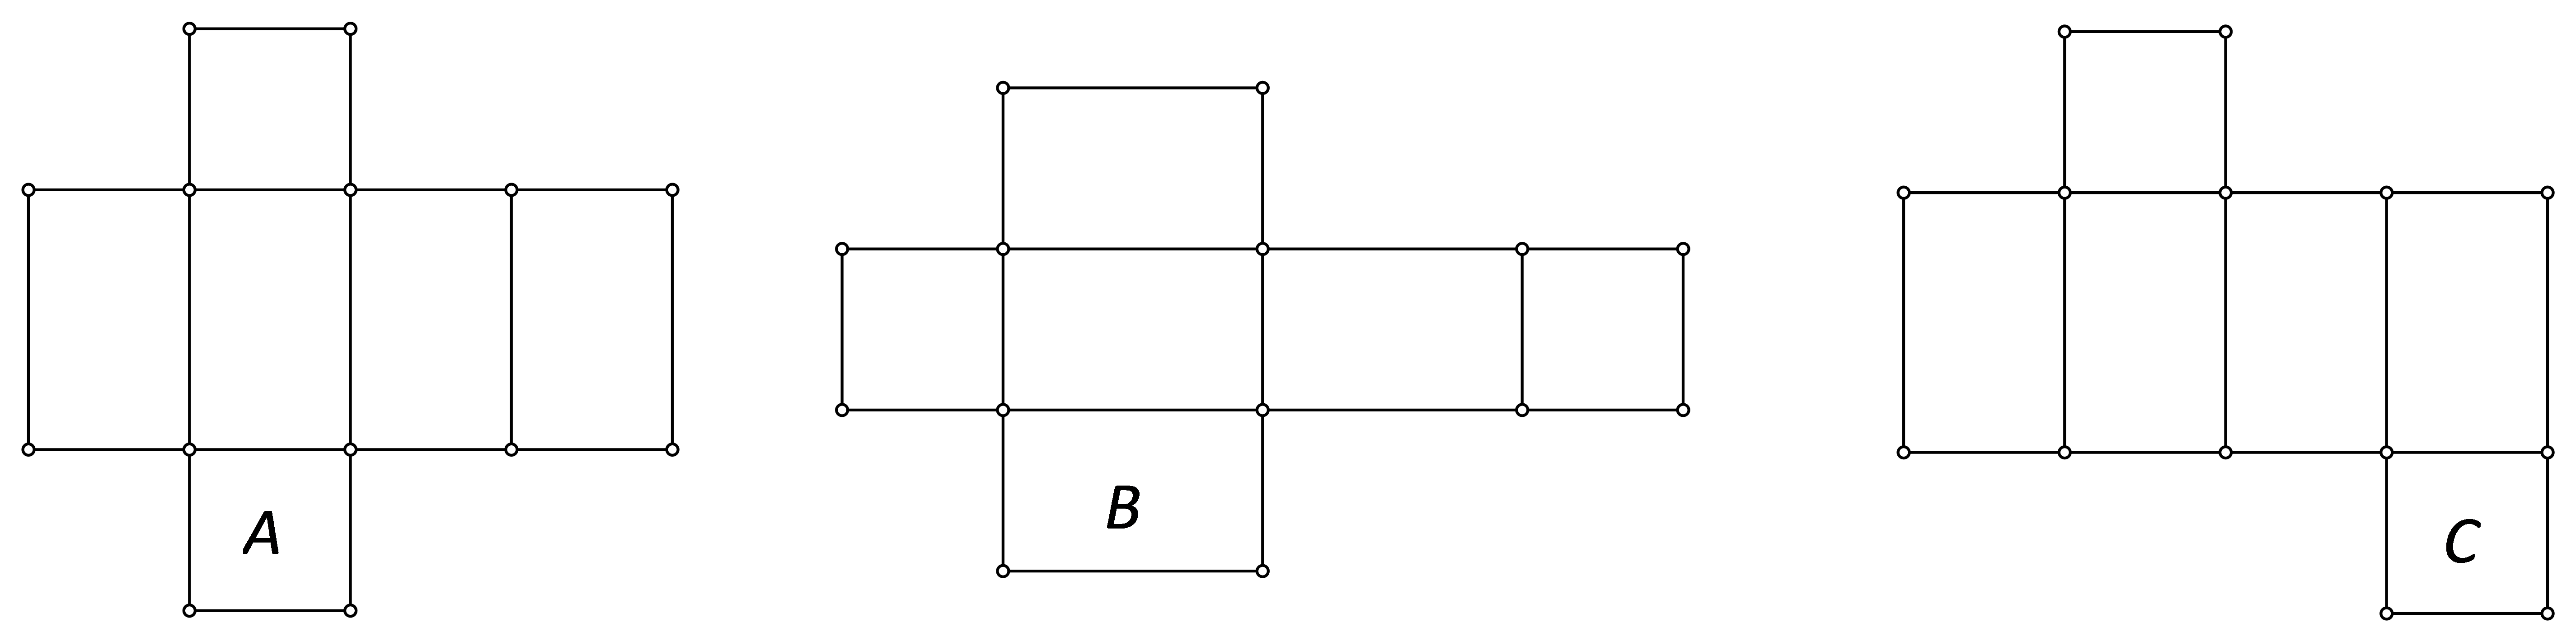 Slika prikazuje moguće mreže prizme iz zadatka.